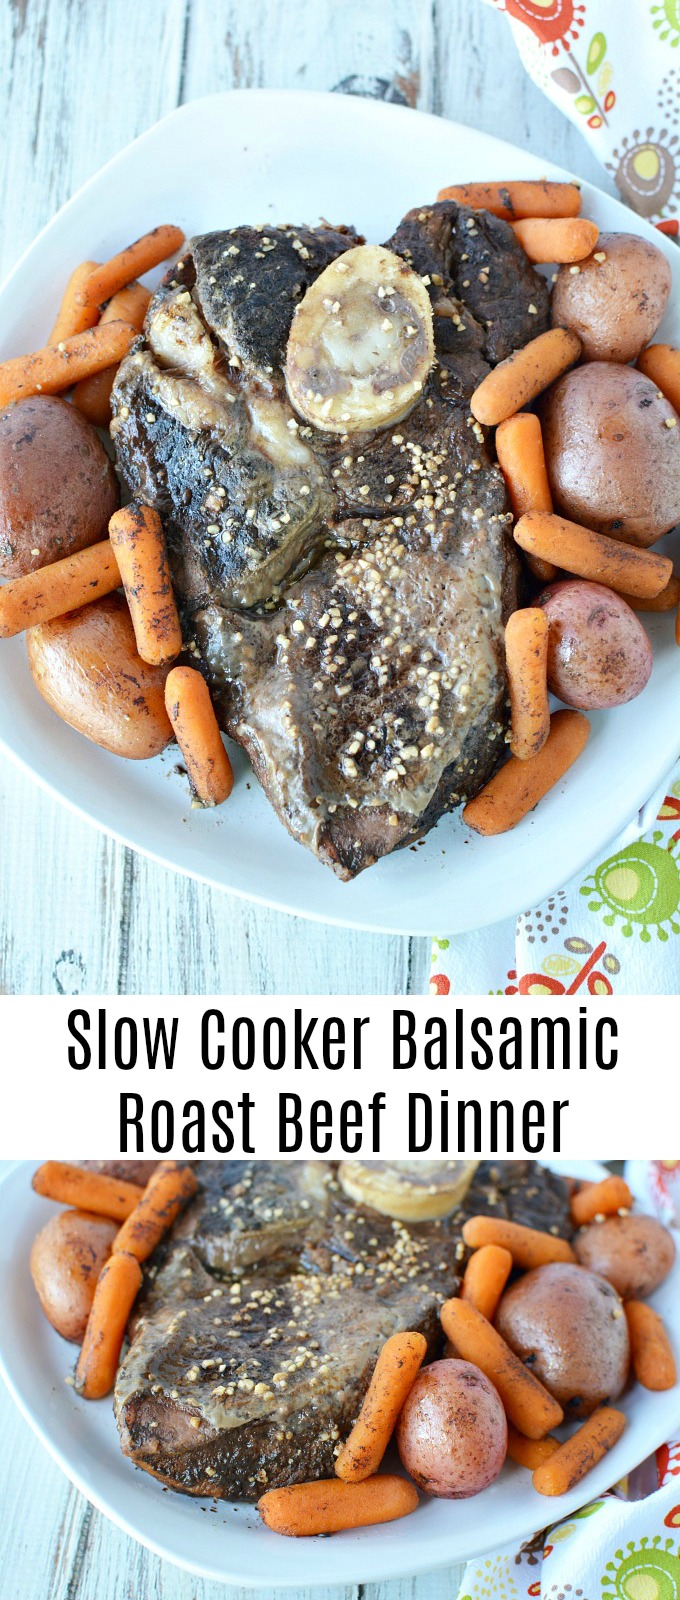 Slow Cooker Balsamic Roast Beef Dinner Recipe